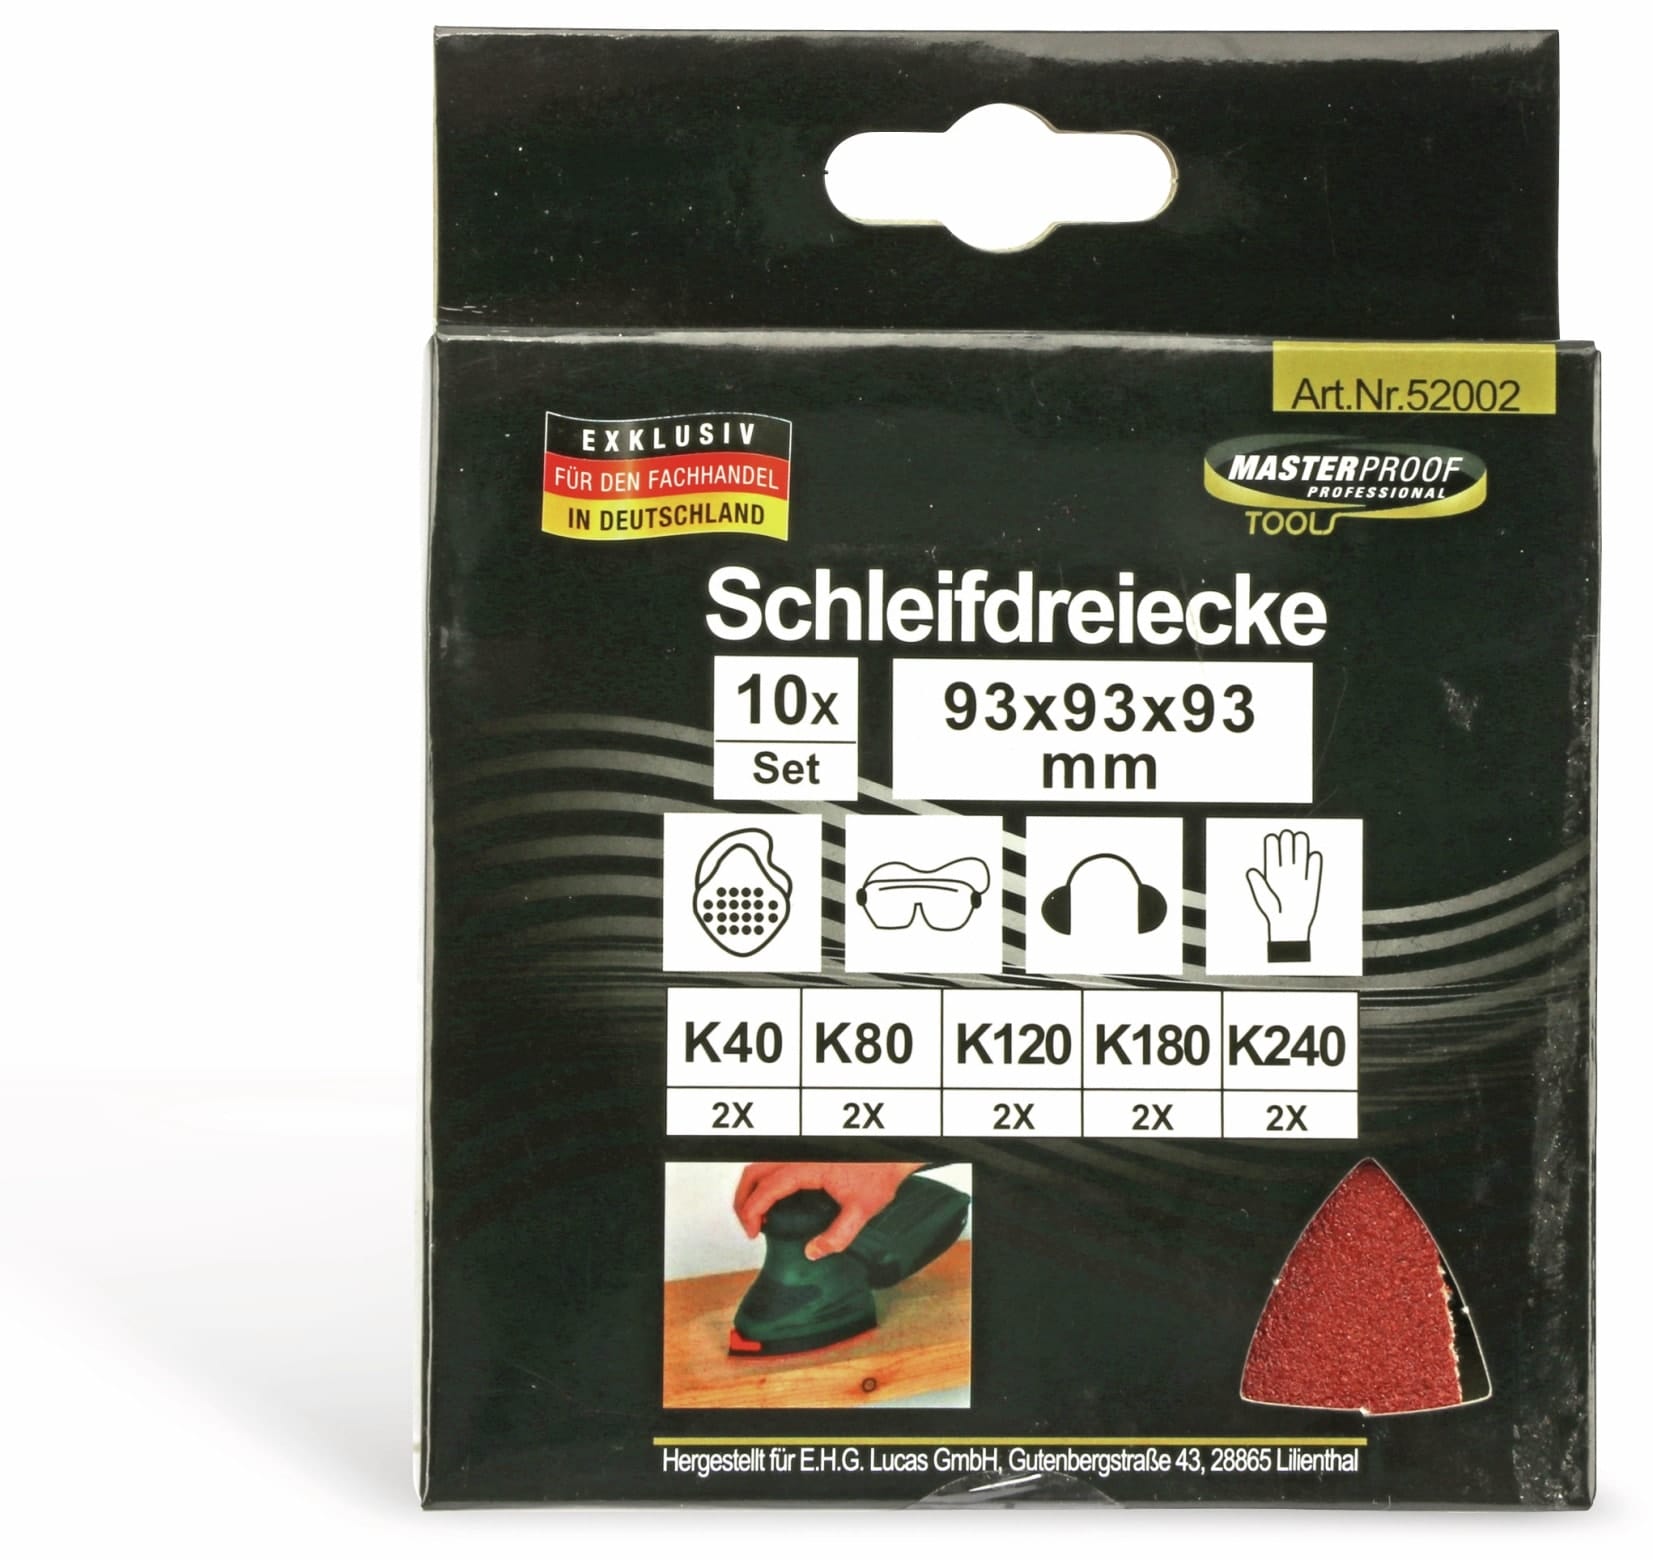 Schleifdreiecke-Set, 10 Stück, 93x93x93 mm